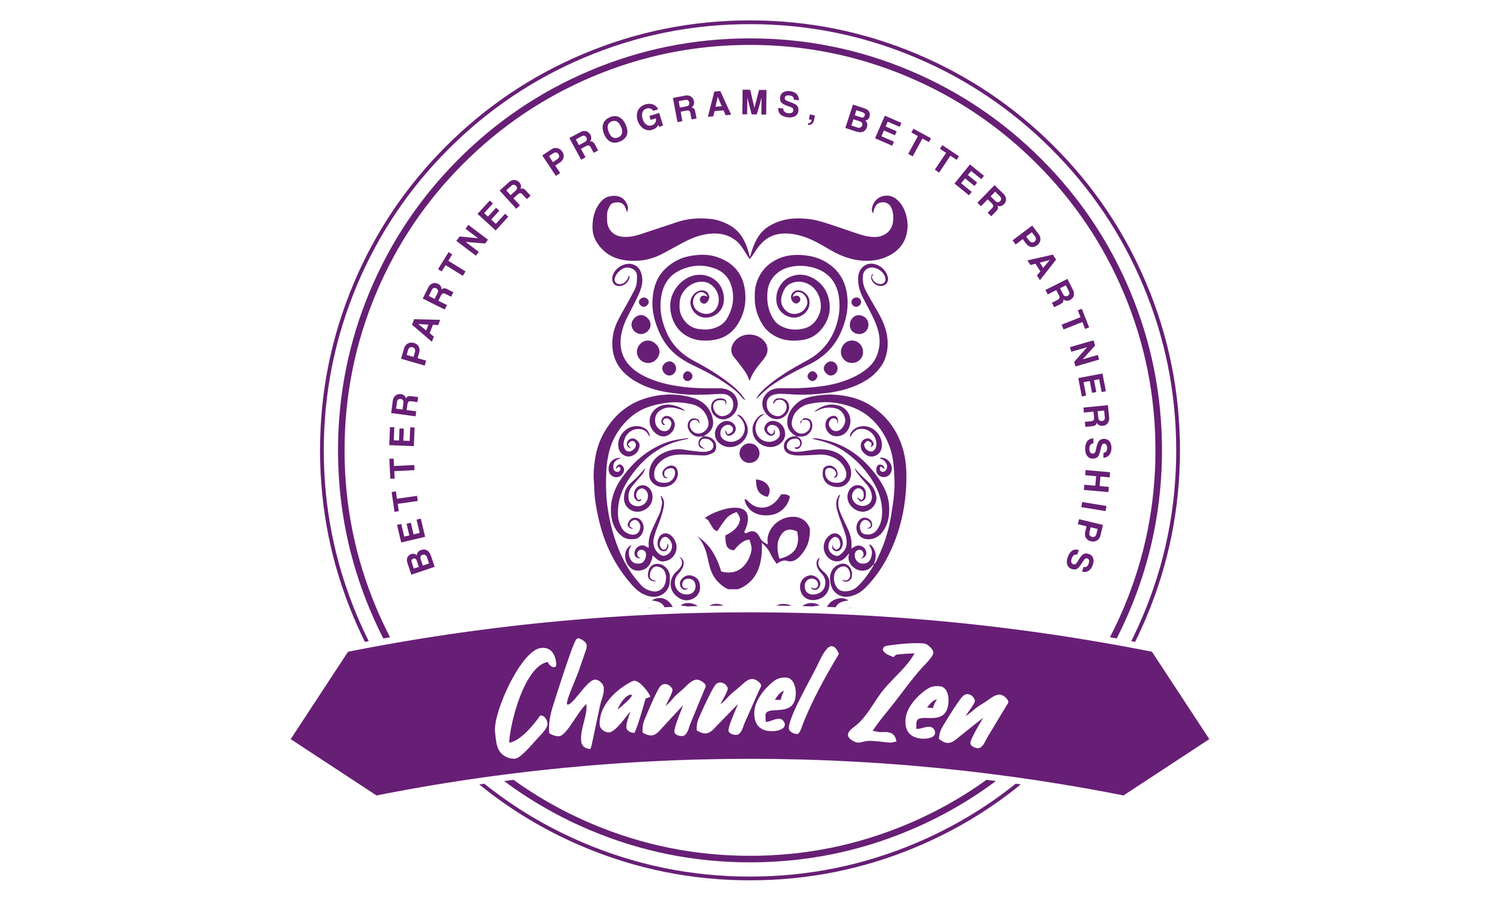 Channel Zen